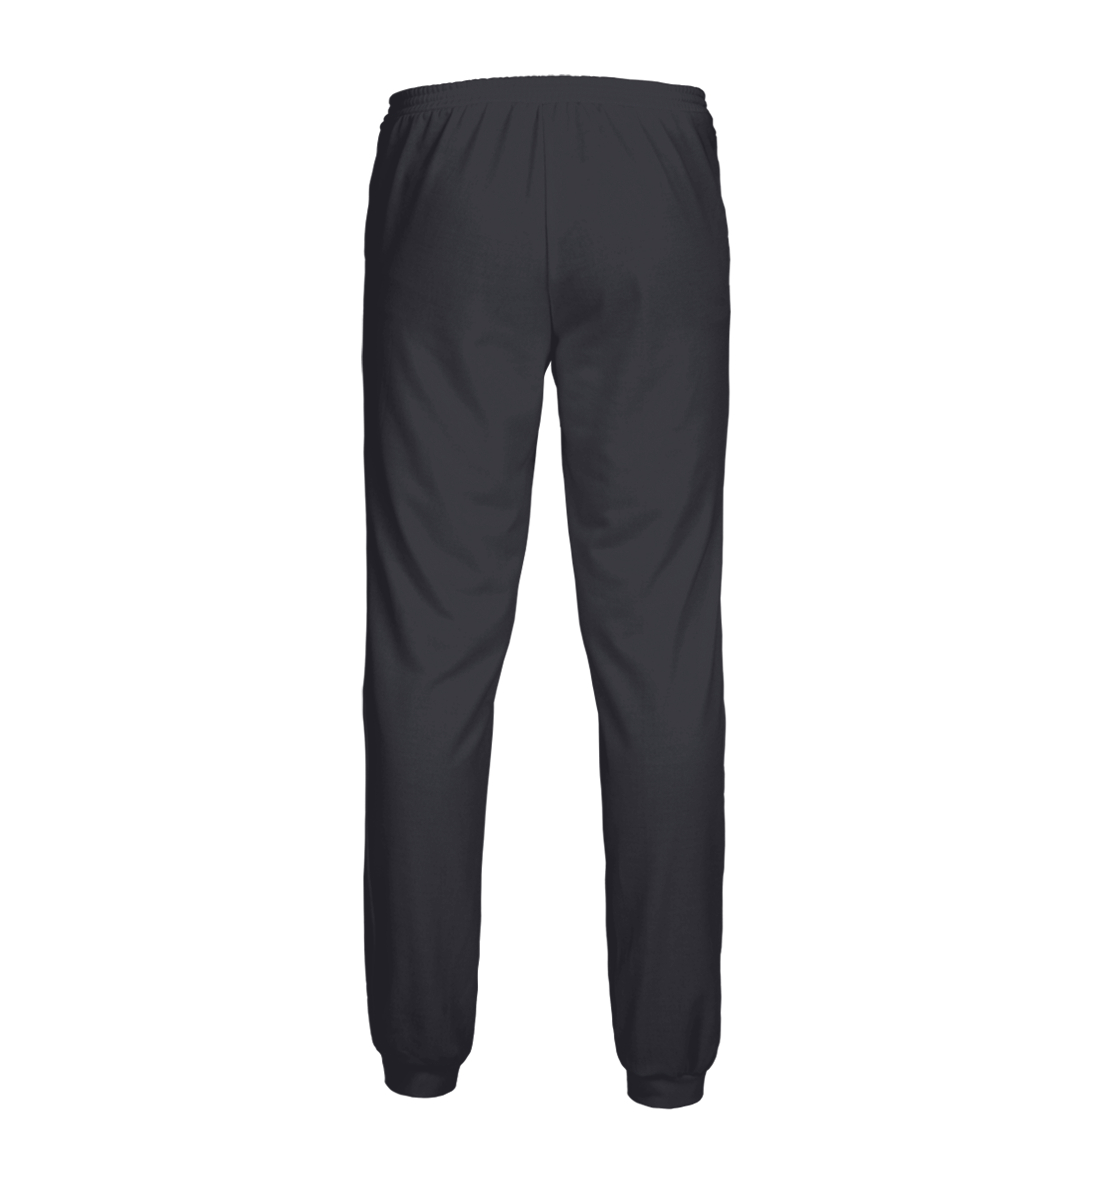 Мужские спортивные штаны с принтом Самбо (grey)  - фото 2-спина